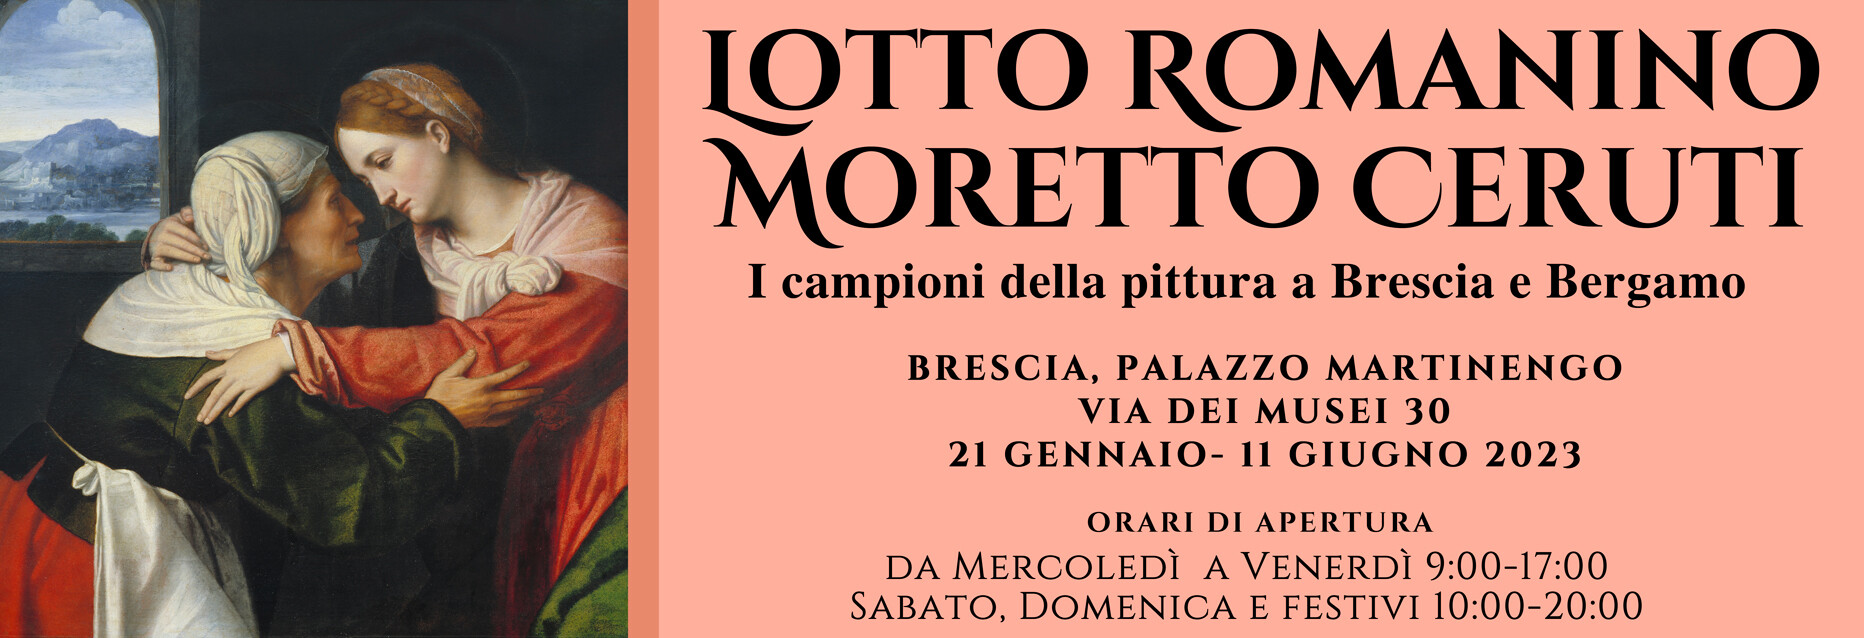 LOTTO, ROMANINO, MORETTO, CERUTI.  I campioni della pittura tra Brescia e Bergamo  in mostra a Palazzo Martinengo